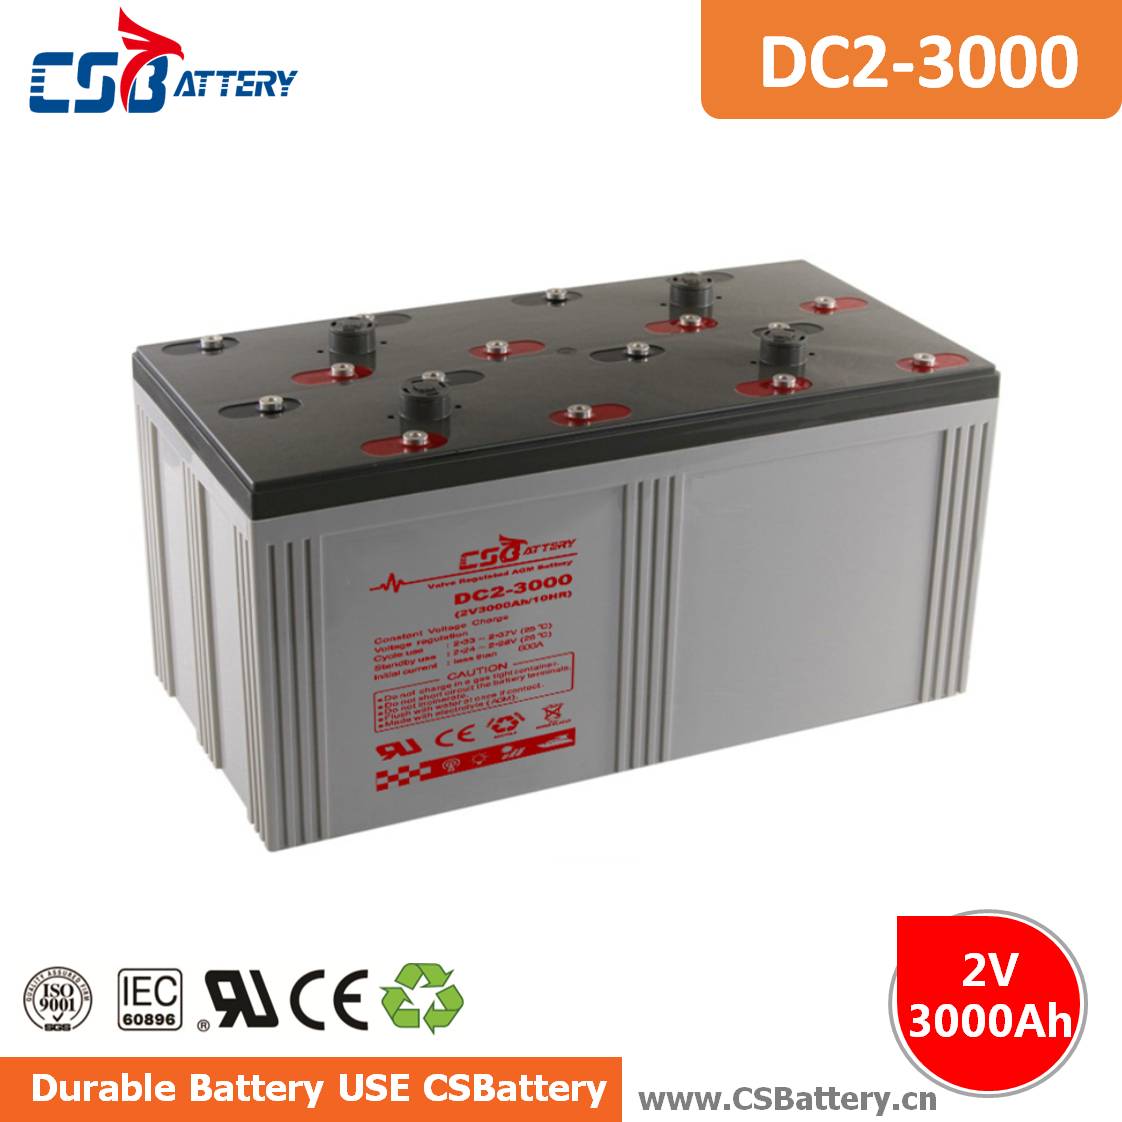 DC2-3000 2V 3000 Ah Deep Cycle AGM Battery